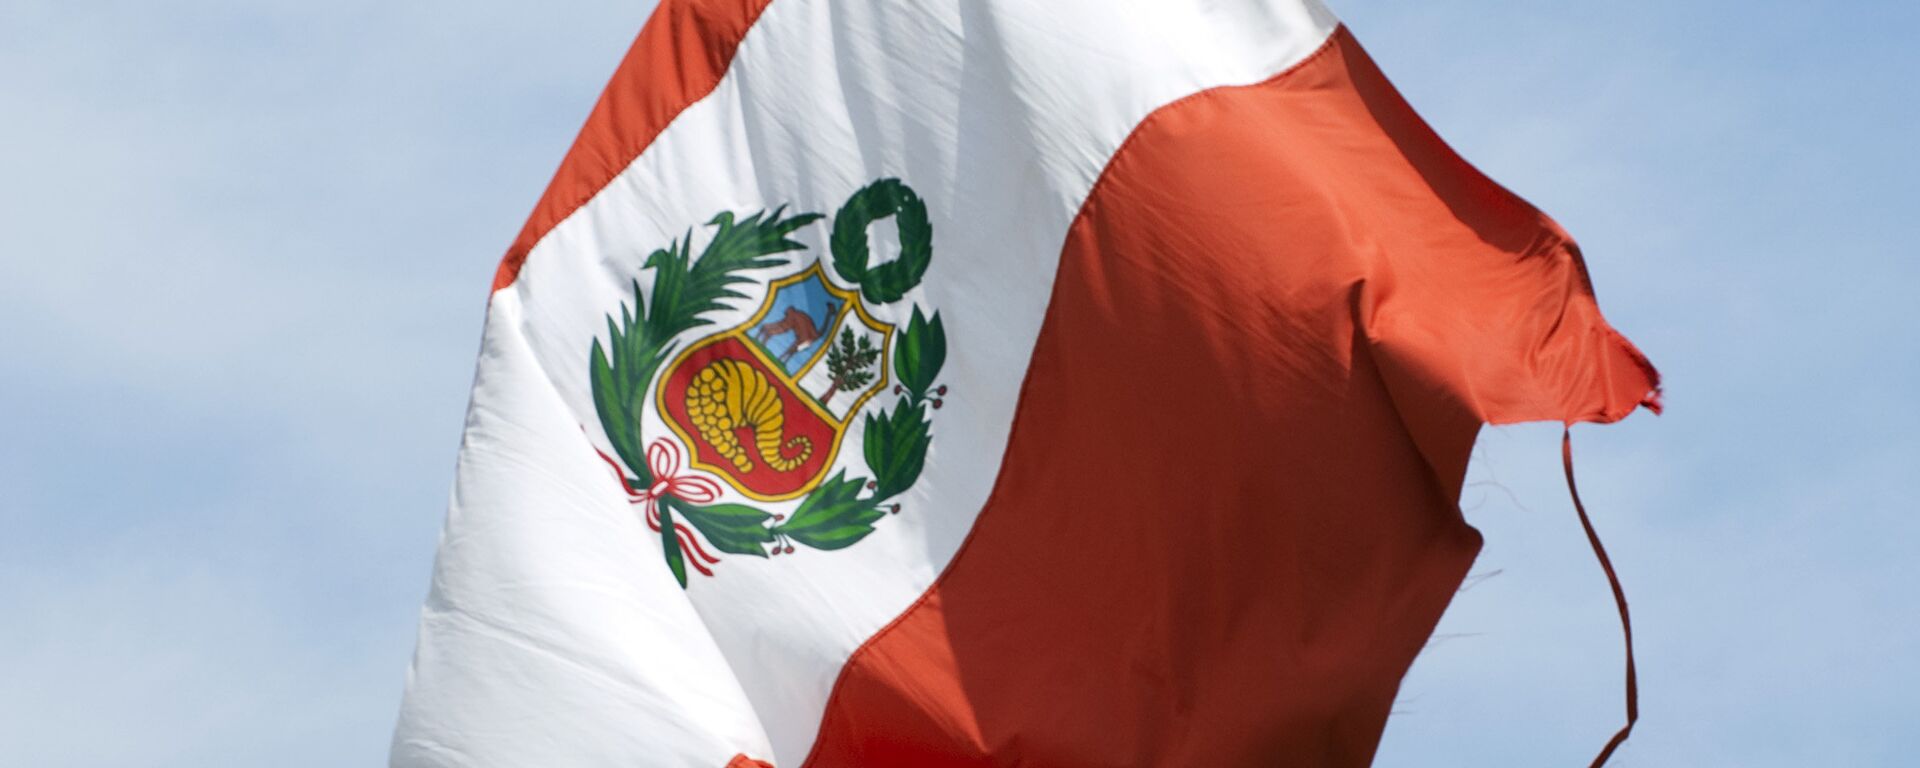 La bandera de Perú - Sputnik Mundo, 1920, 14.10.2021